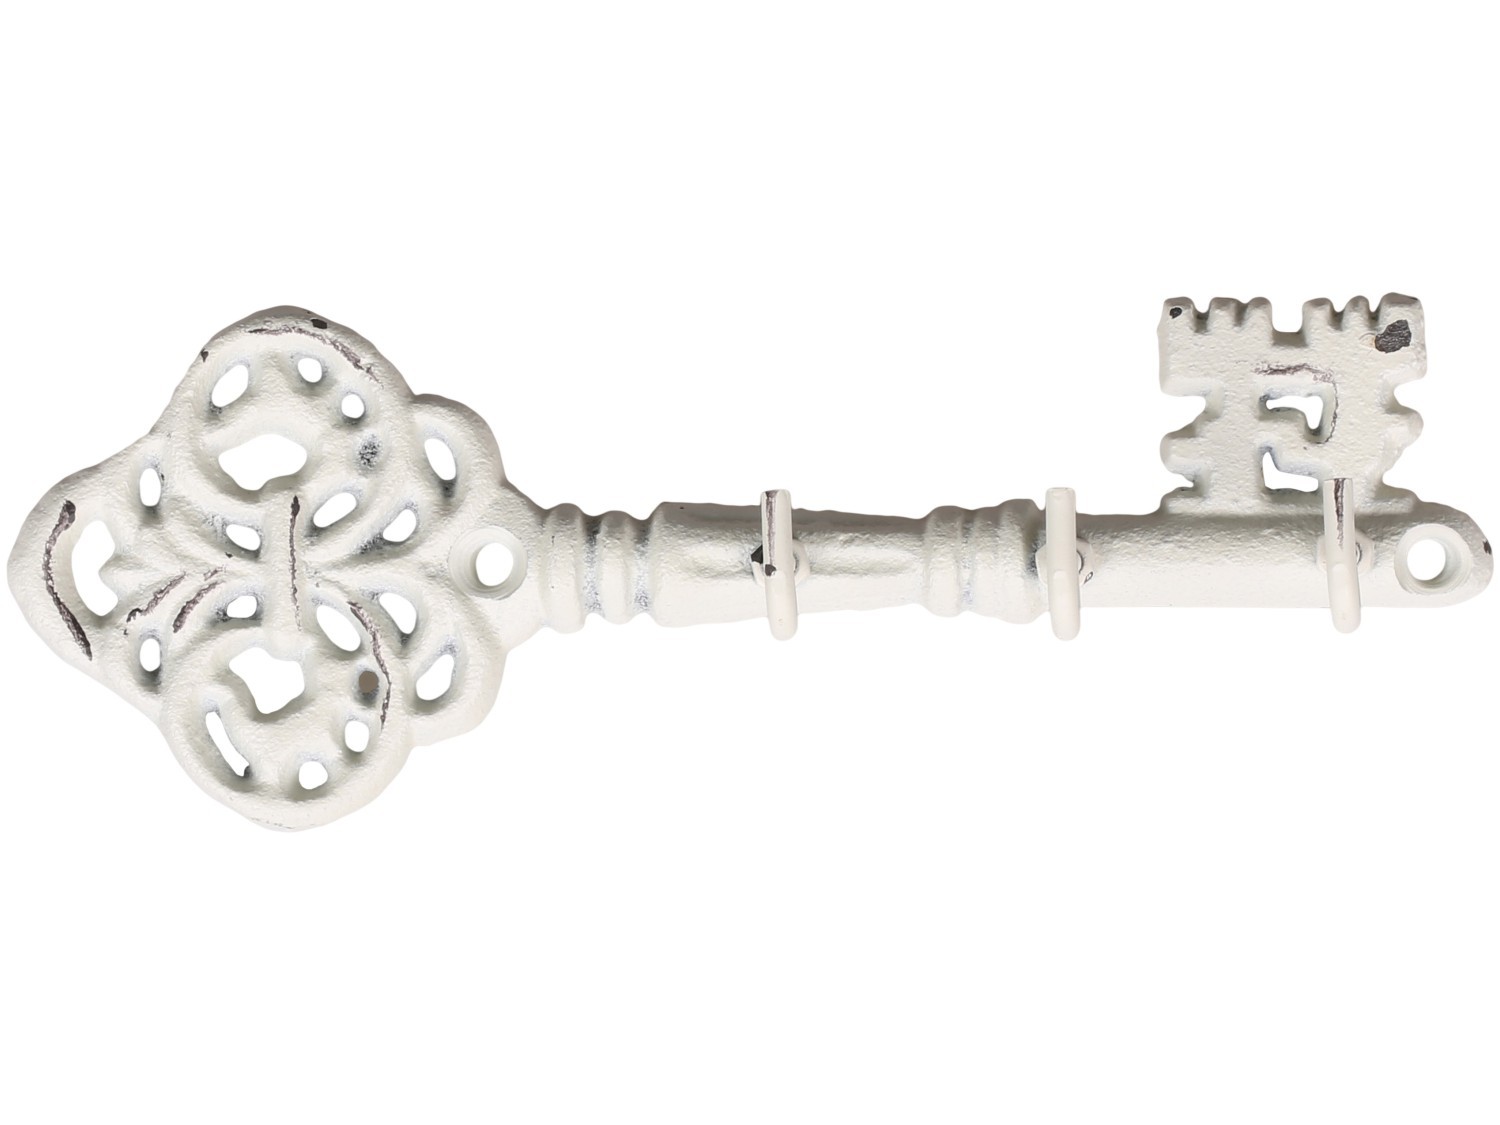 Krémový antik nástěnný věšák ve tvaru klíče se 3-mi háčky - 19*4*6,5 cm Chic Antique